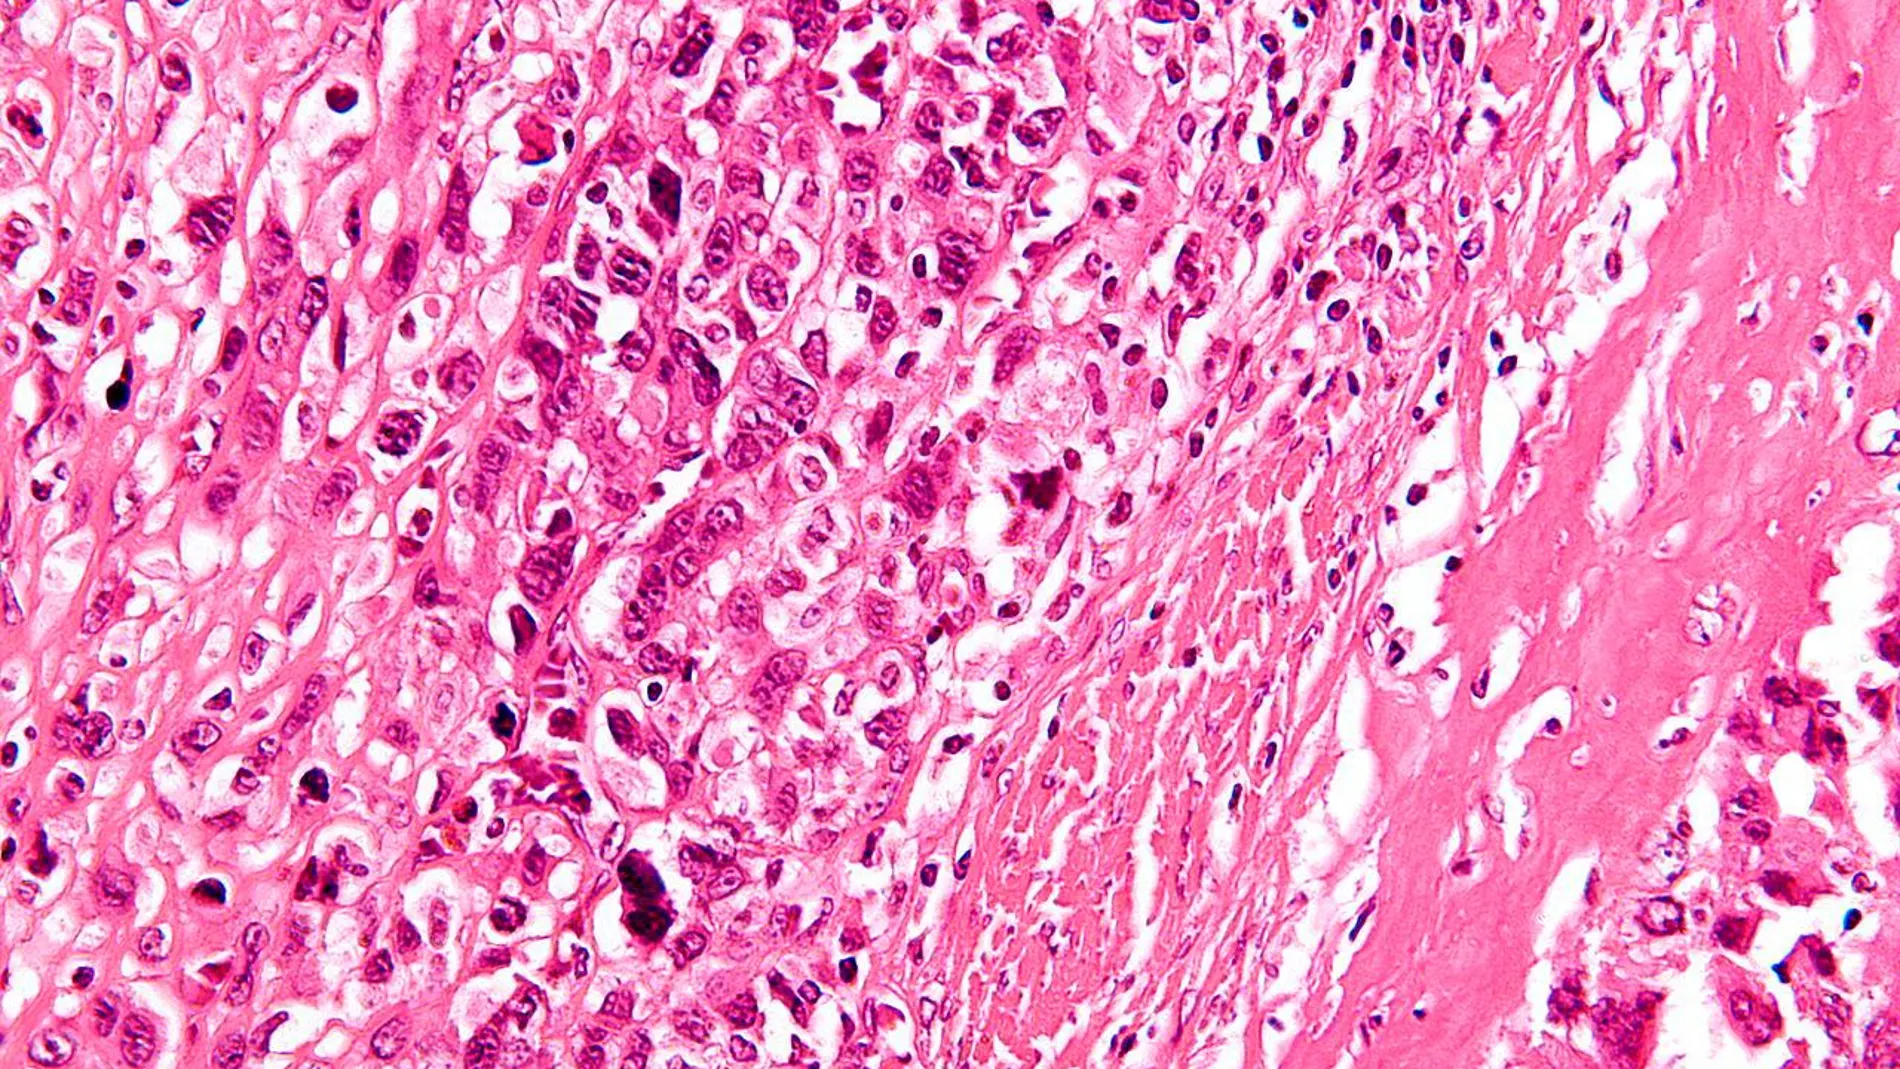 Biopsia que muestra la formación de osteoides en una tinción de osteosarcoma / Wikipedia